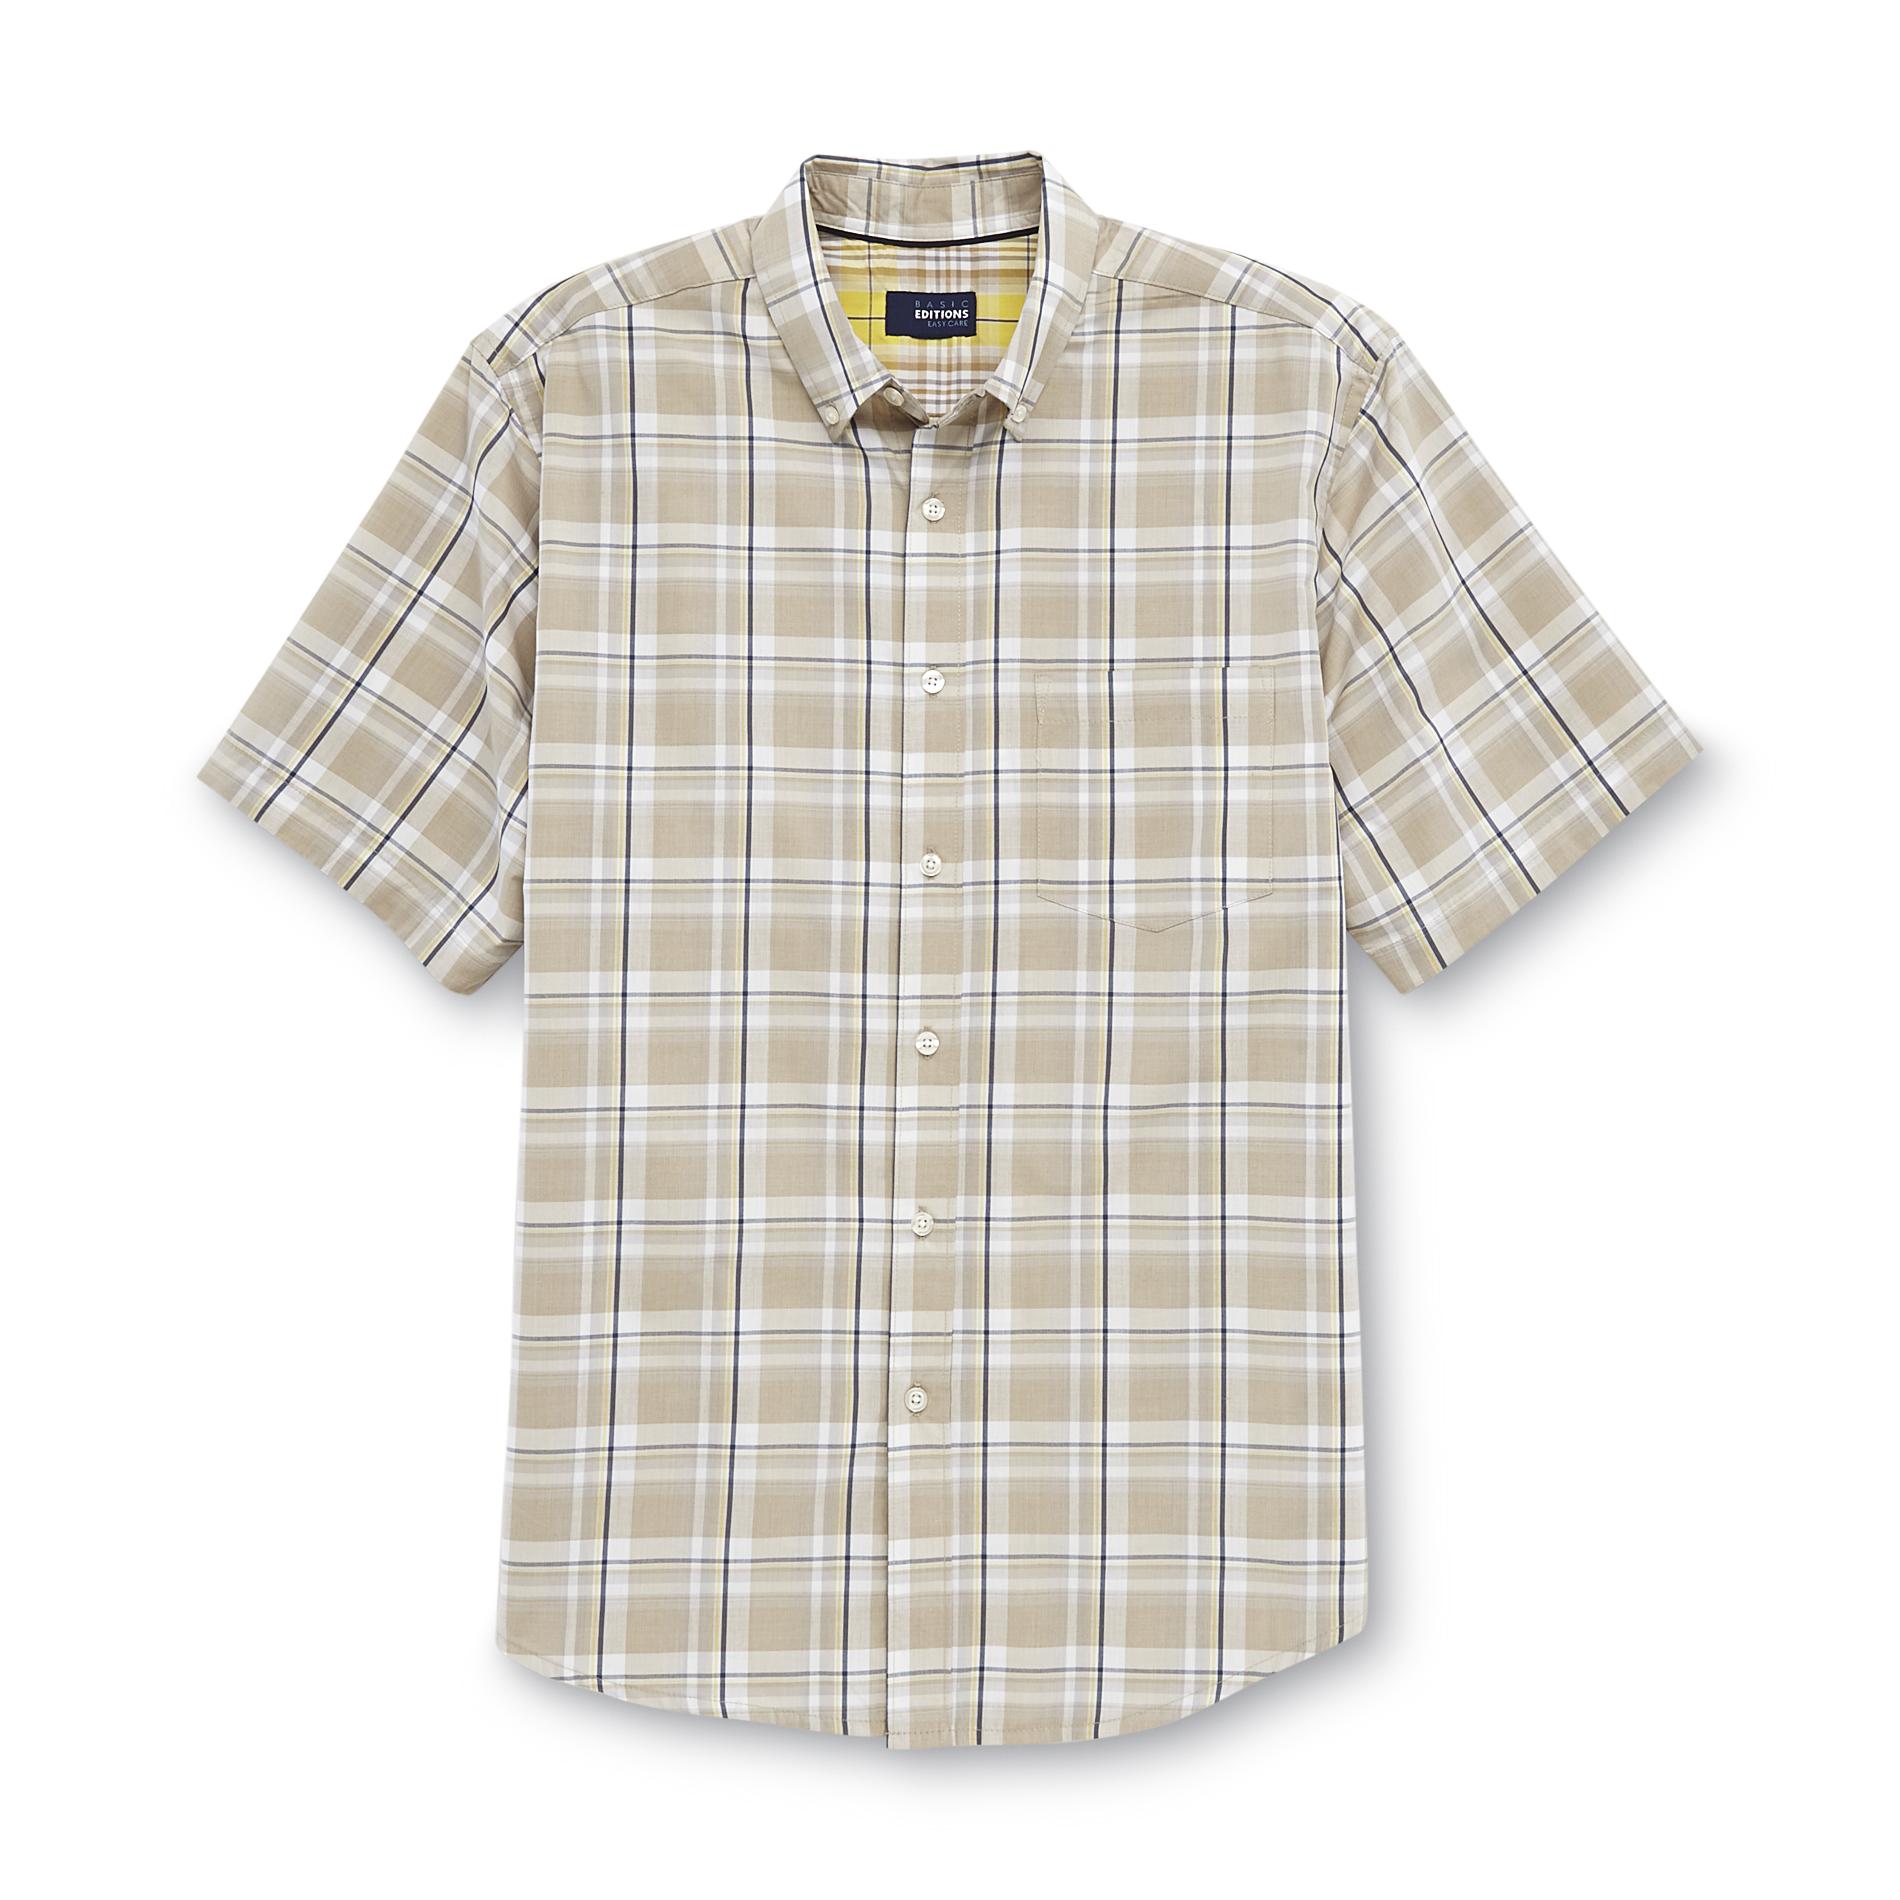 Basic Editions Men's Short-Sleeve Poplin Shirt - Plaid